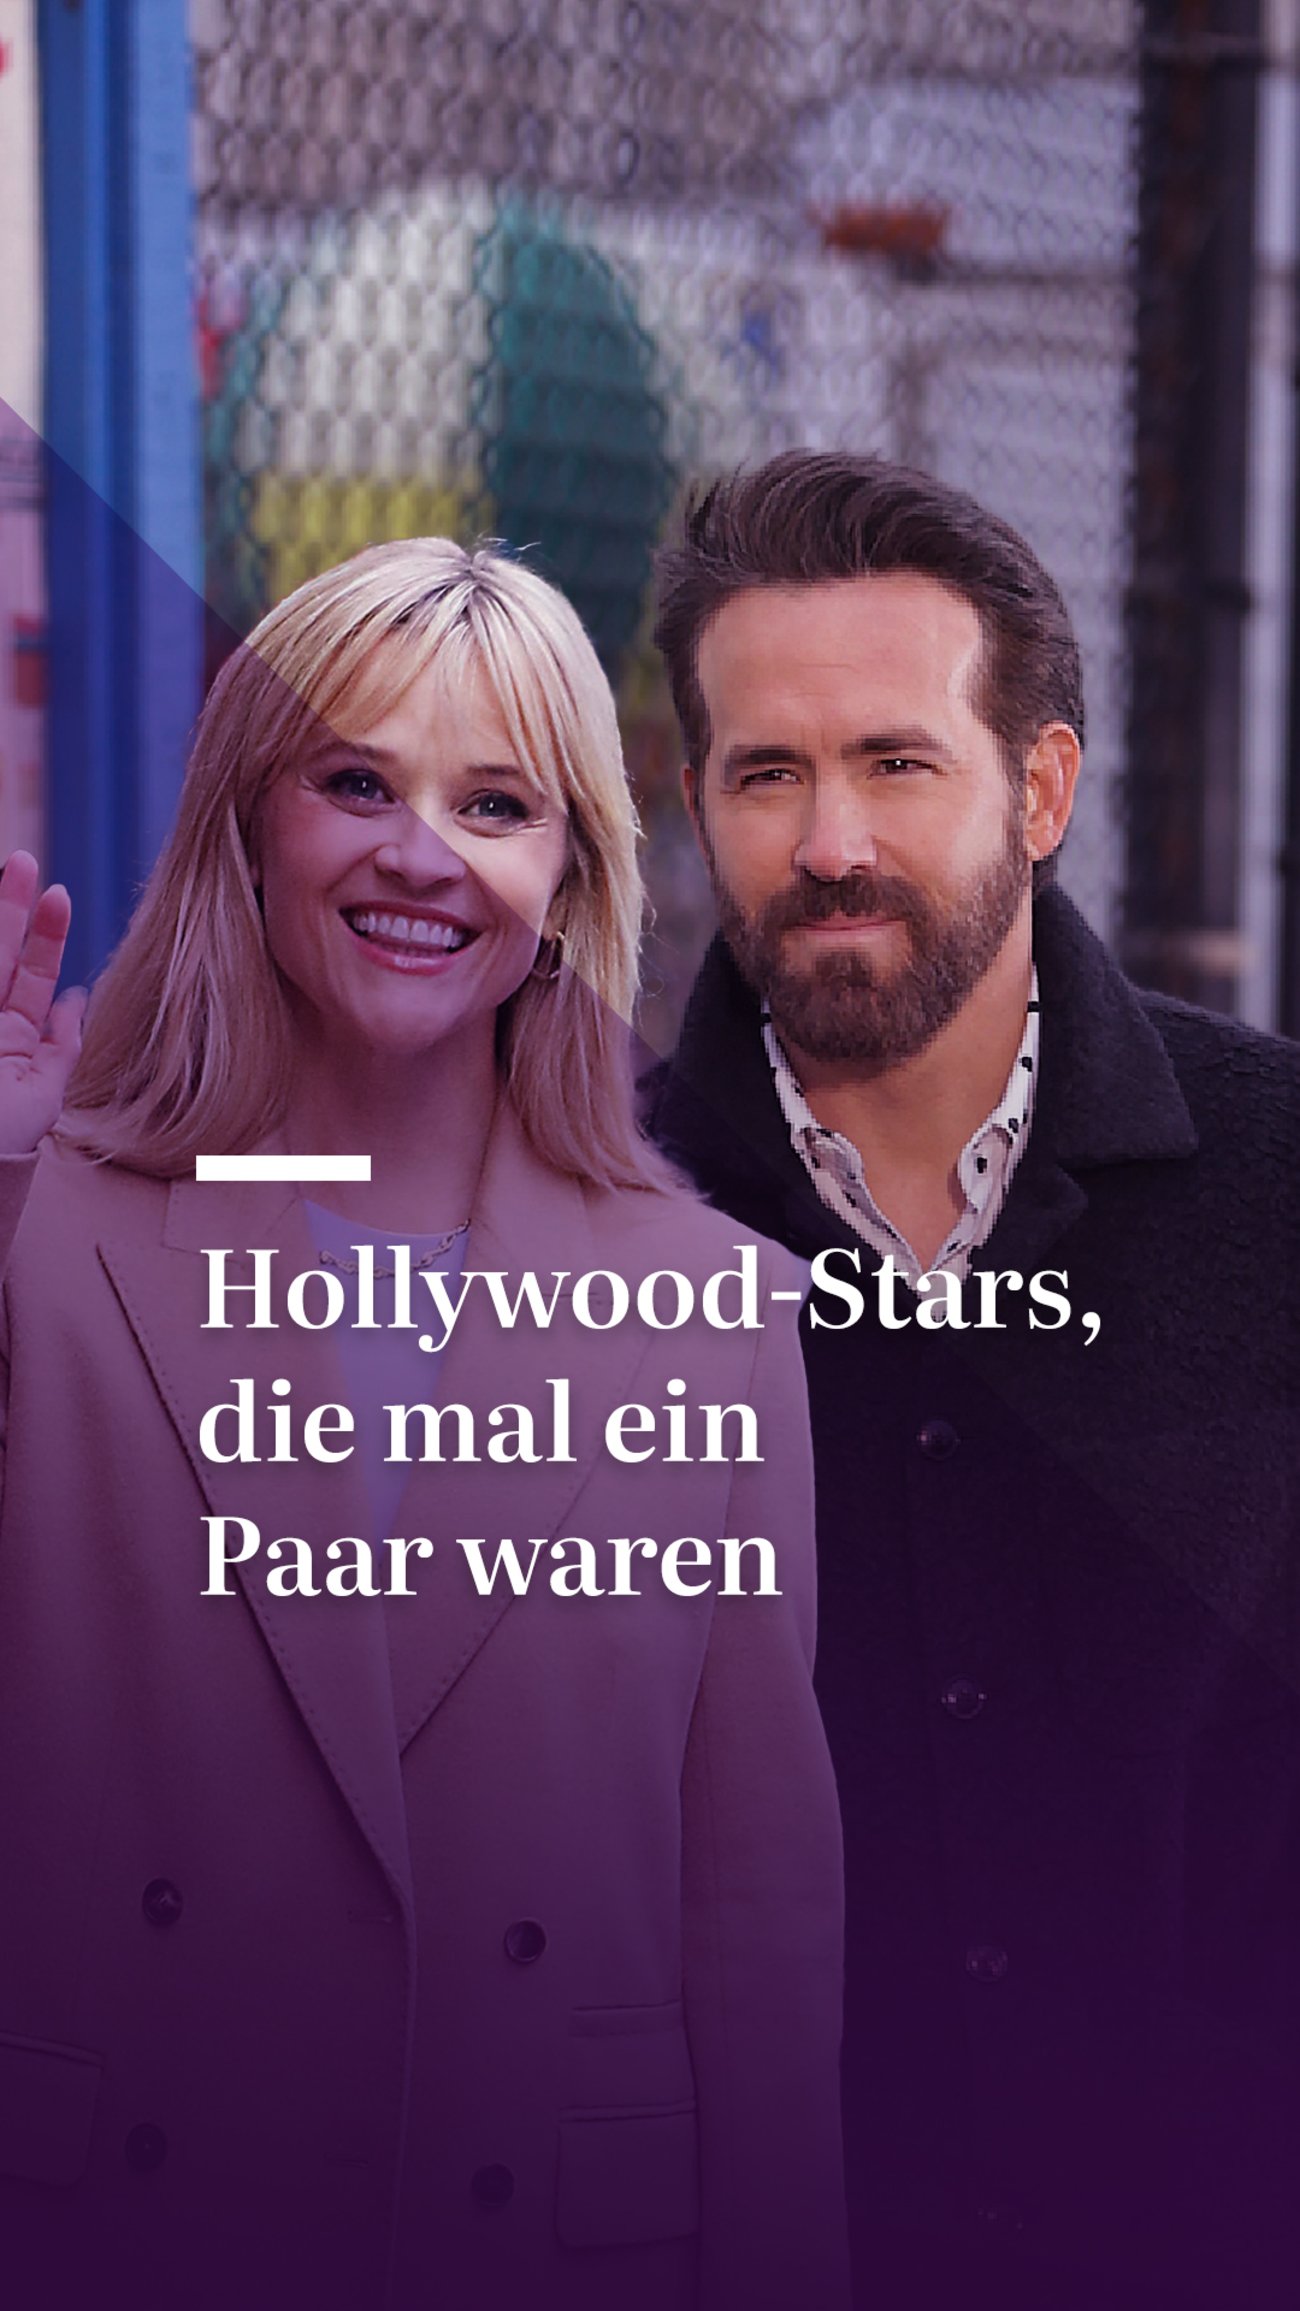 Hollywood-Stars, die wirklich mal ein Paar waren